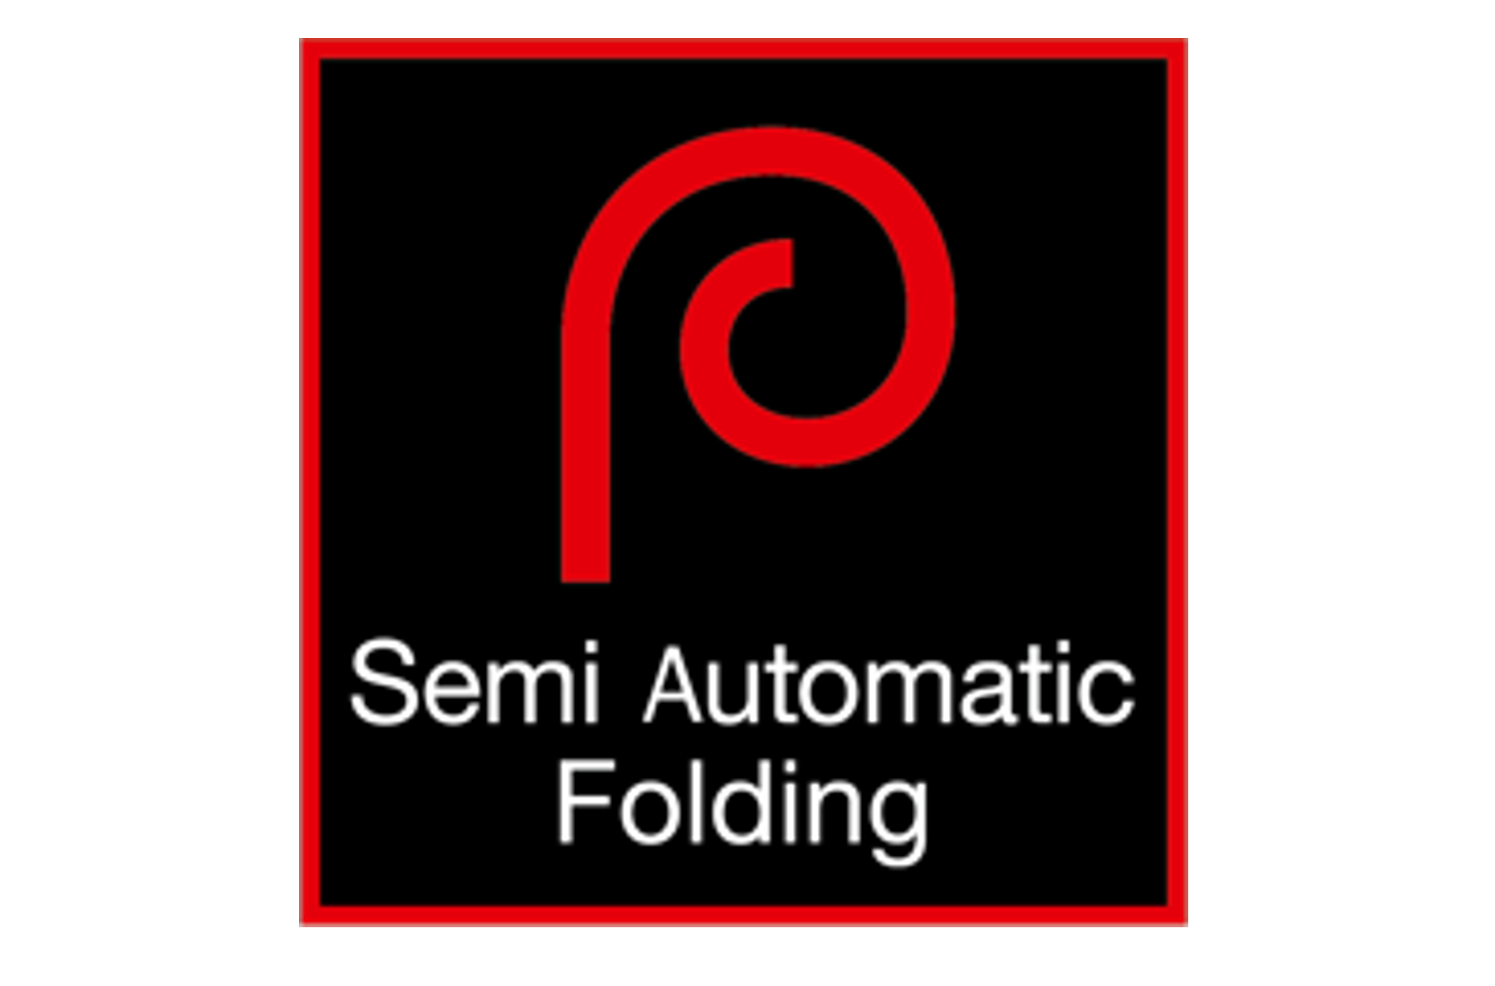 Semi Automatic Folding